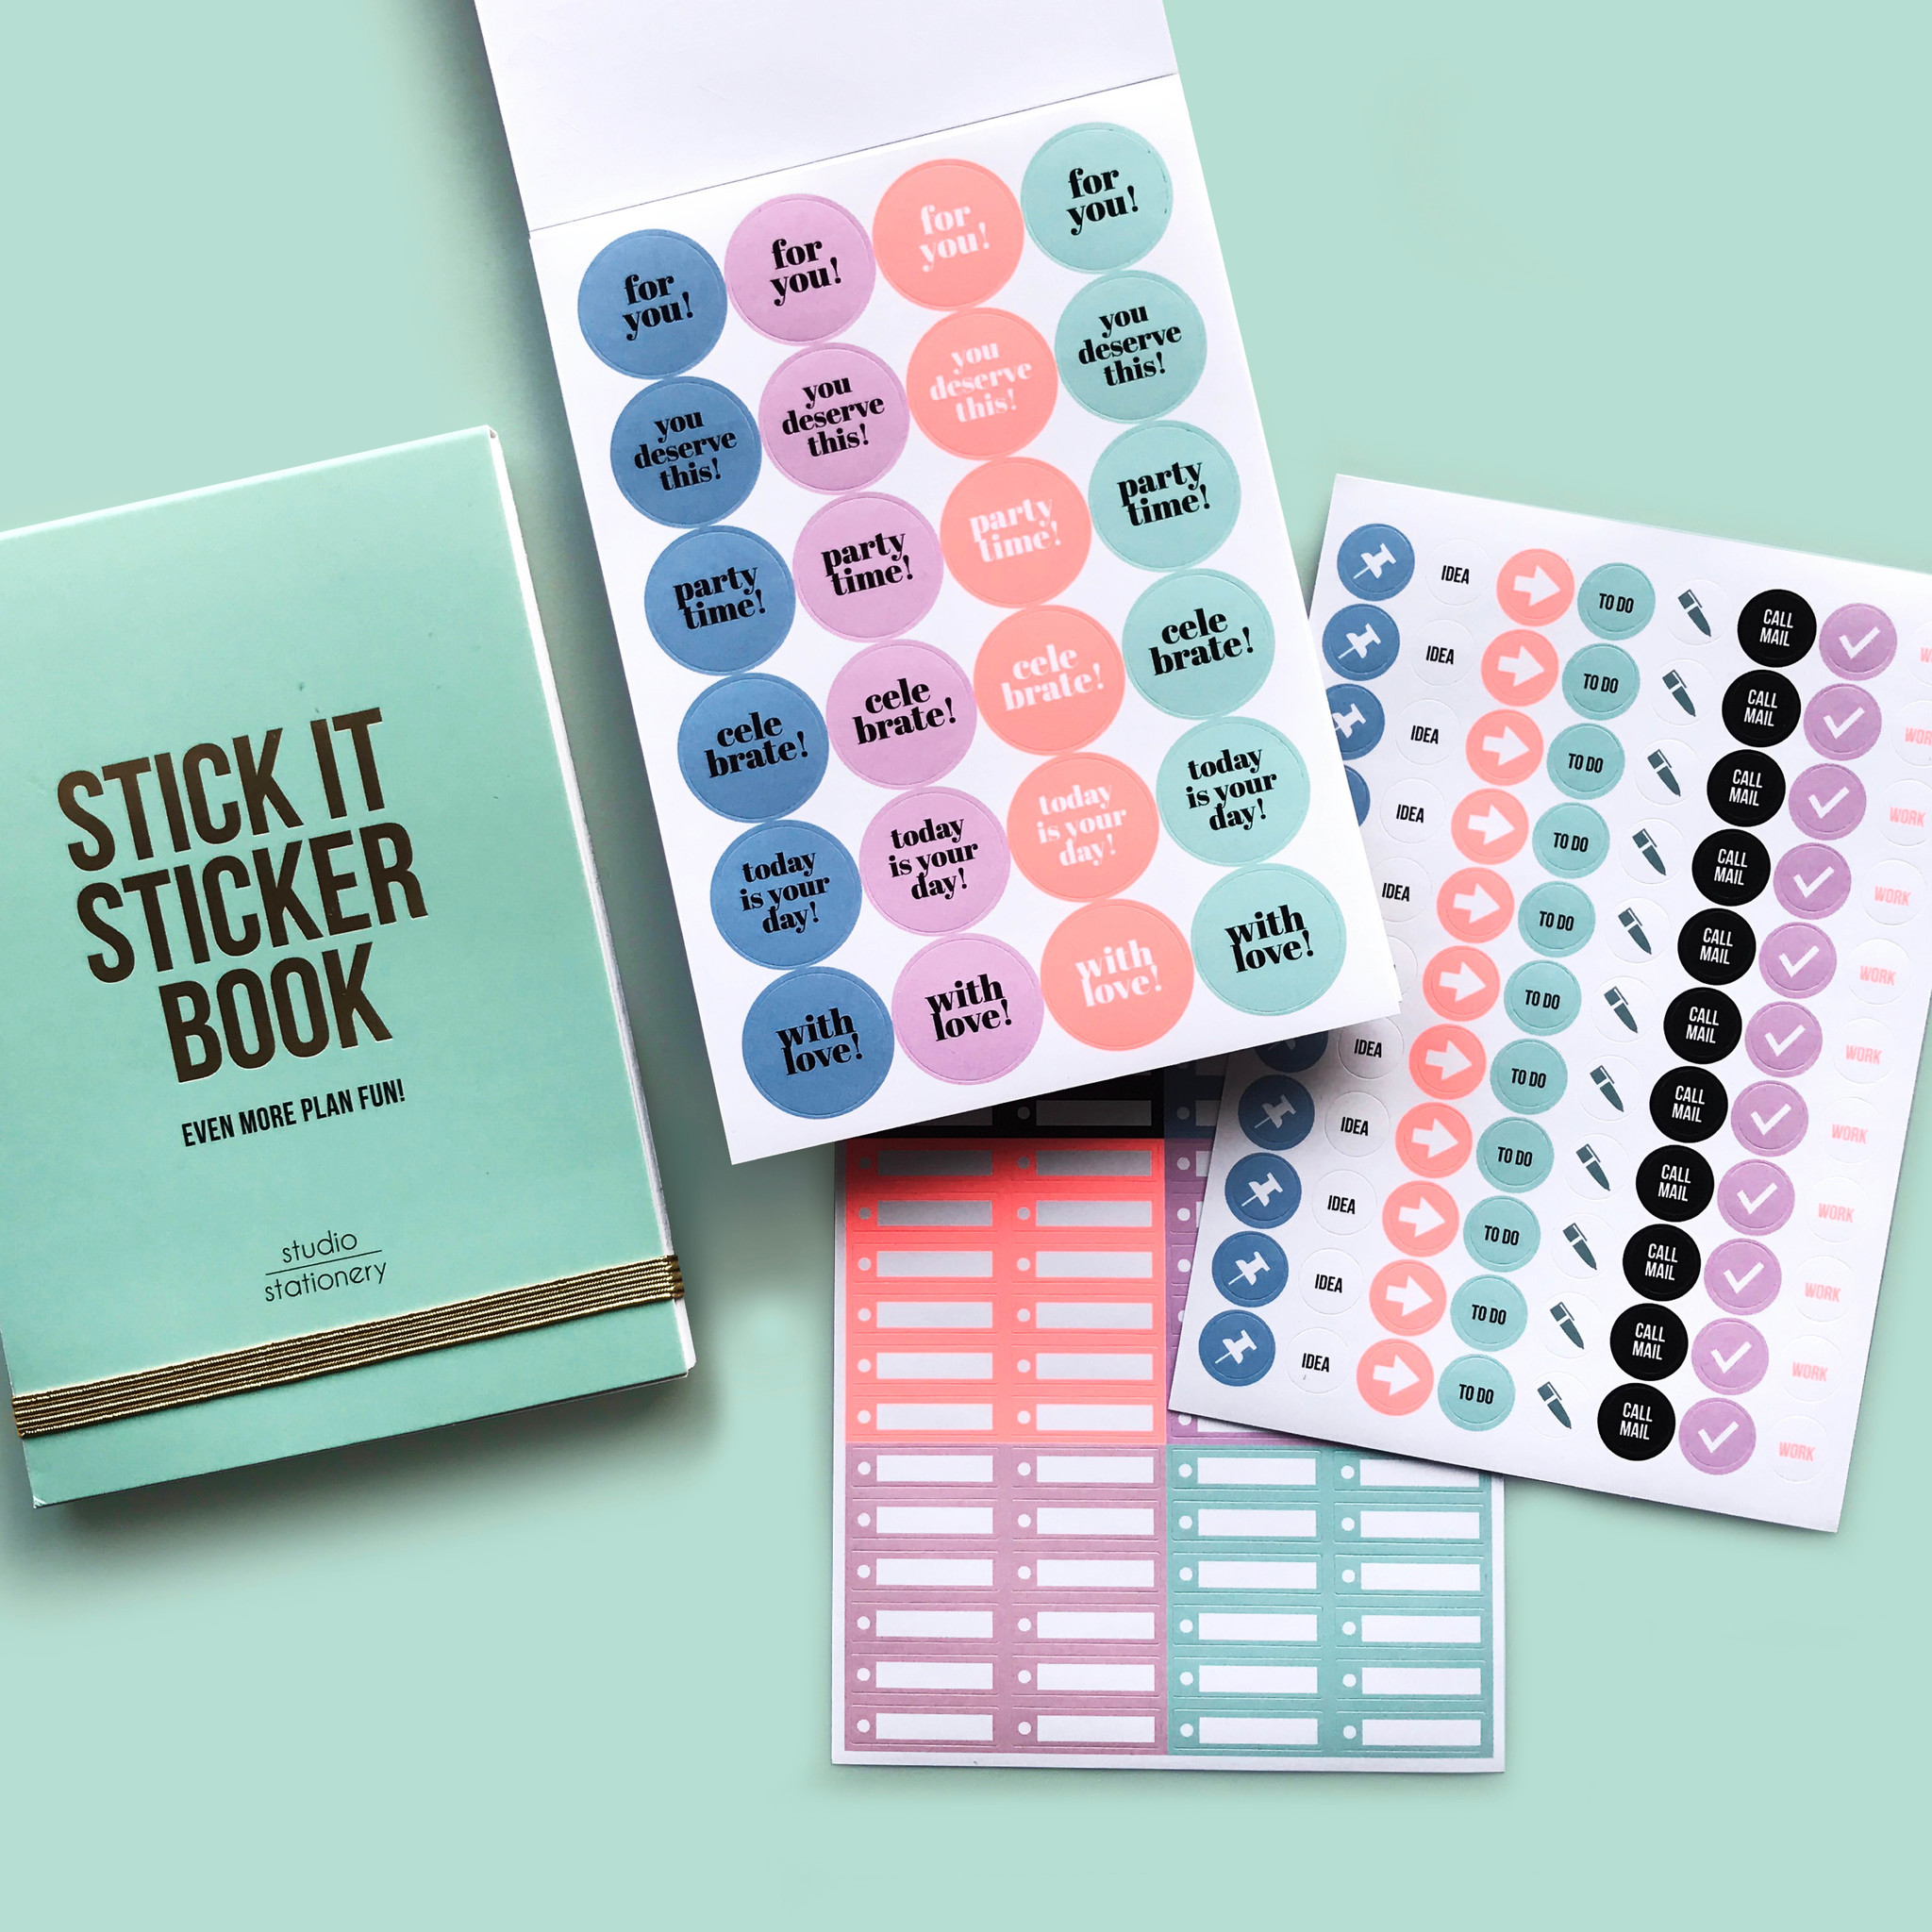 Stick it stickerbook pink